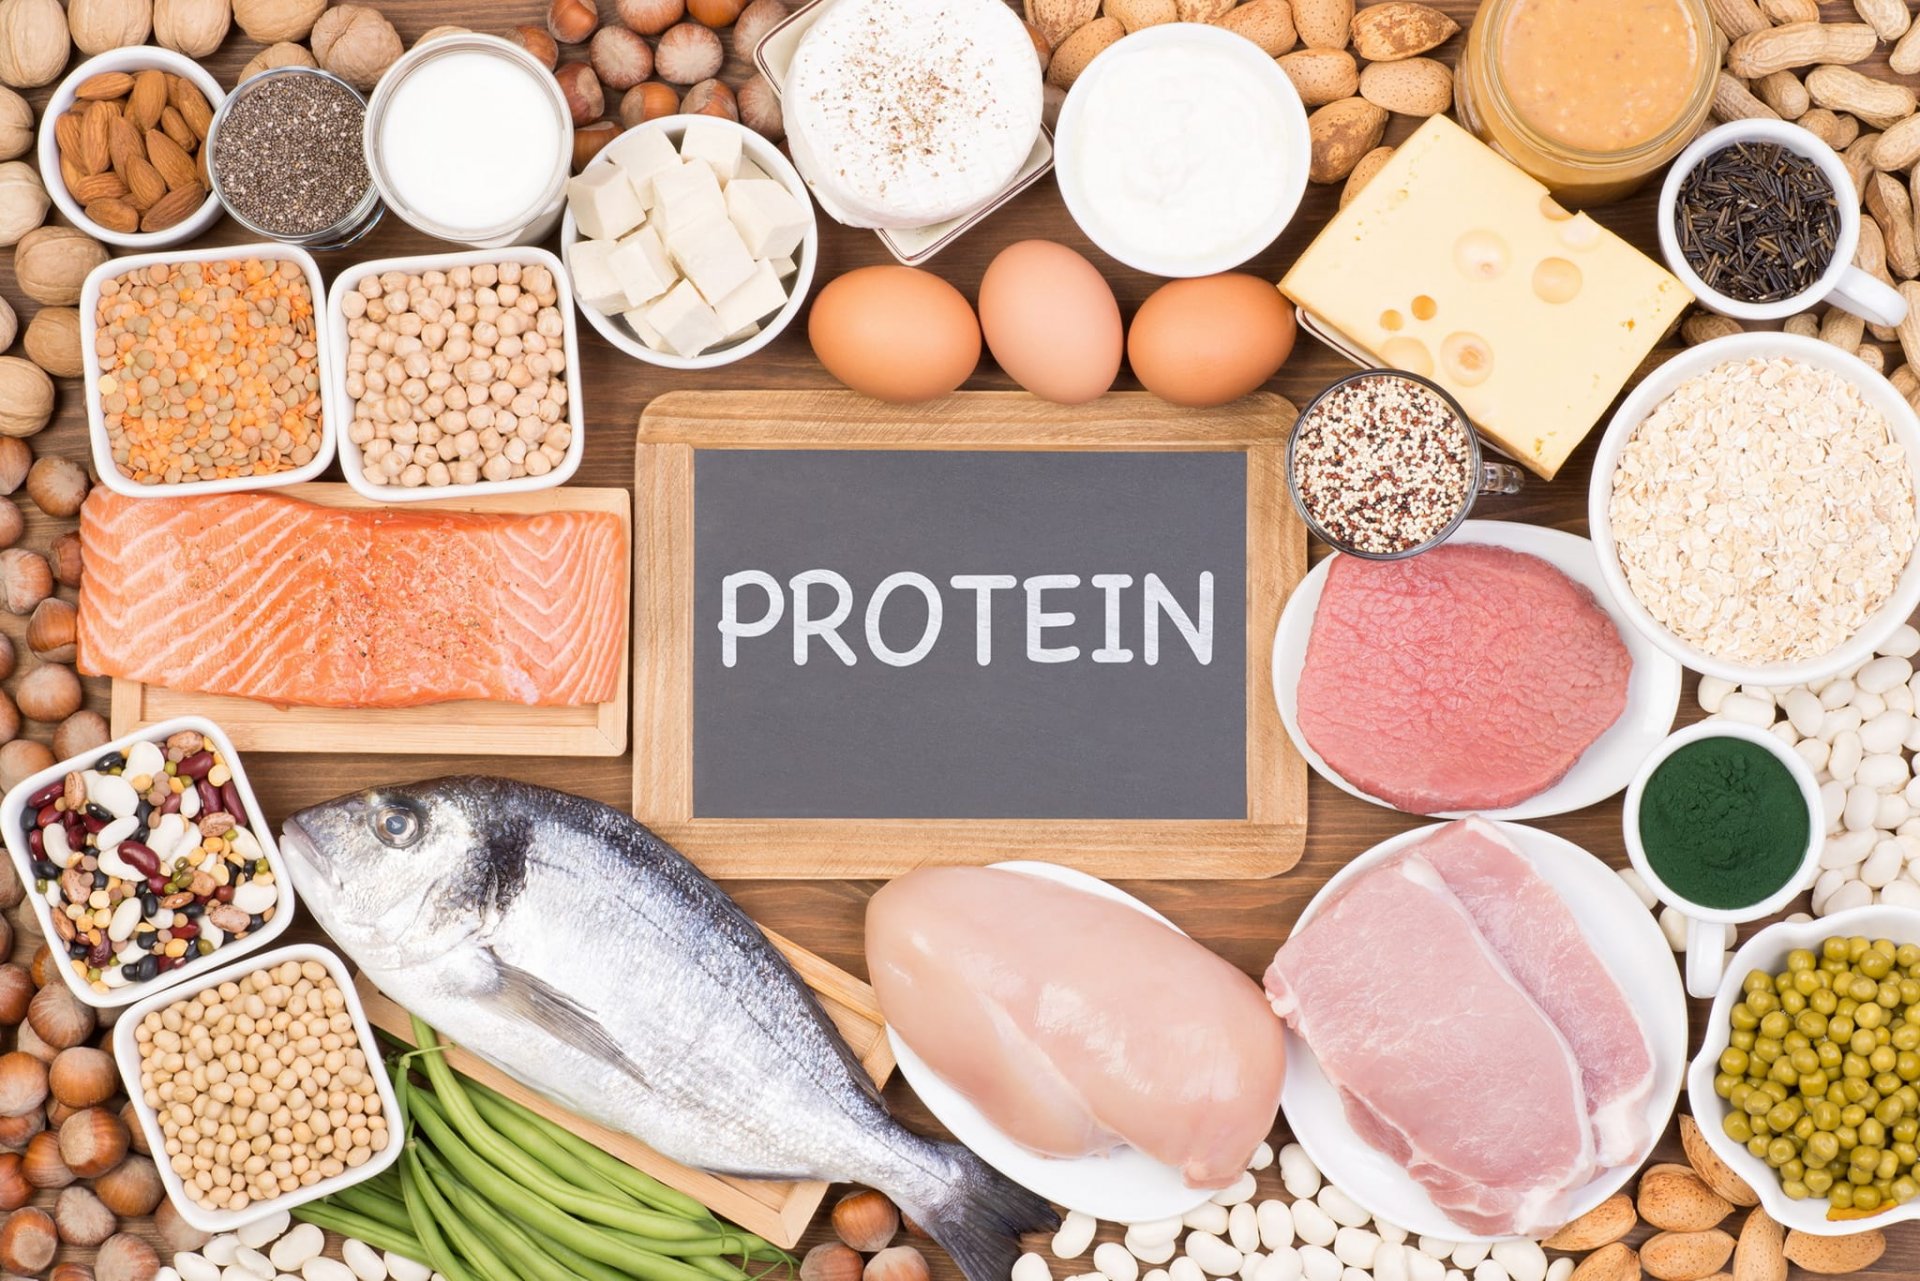 อยากลดน้ำหนักต้องอ่าน! “สารอาหารครบ+เพิ่มโปรตีน” เรื่องสำคัญที่อย่ามองข้าม